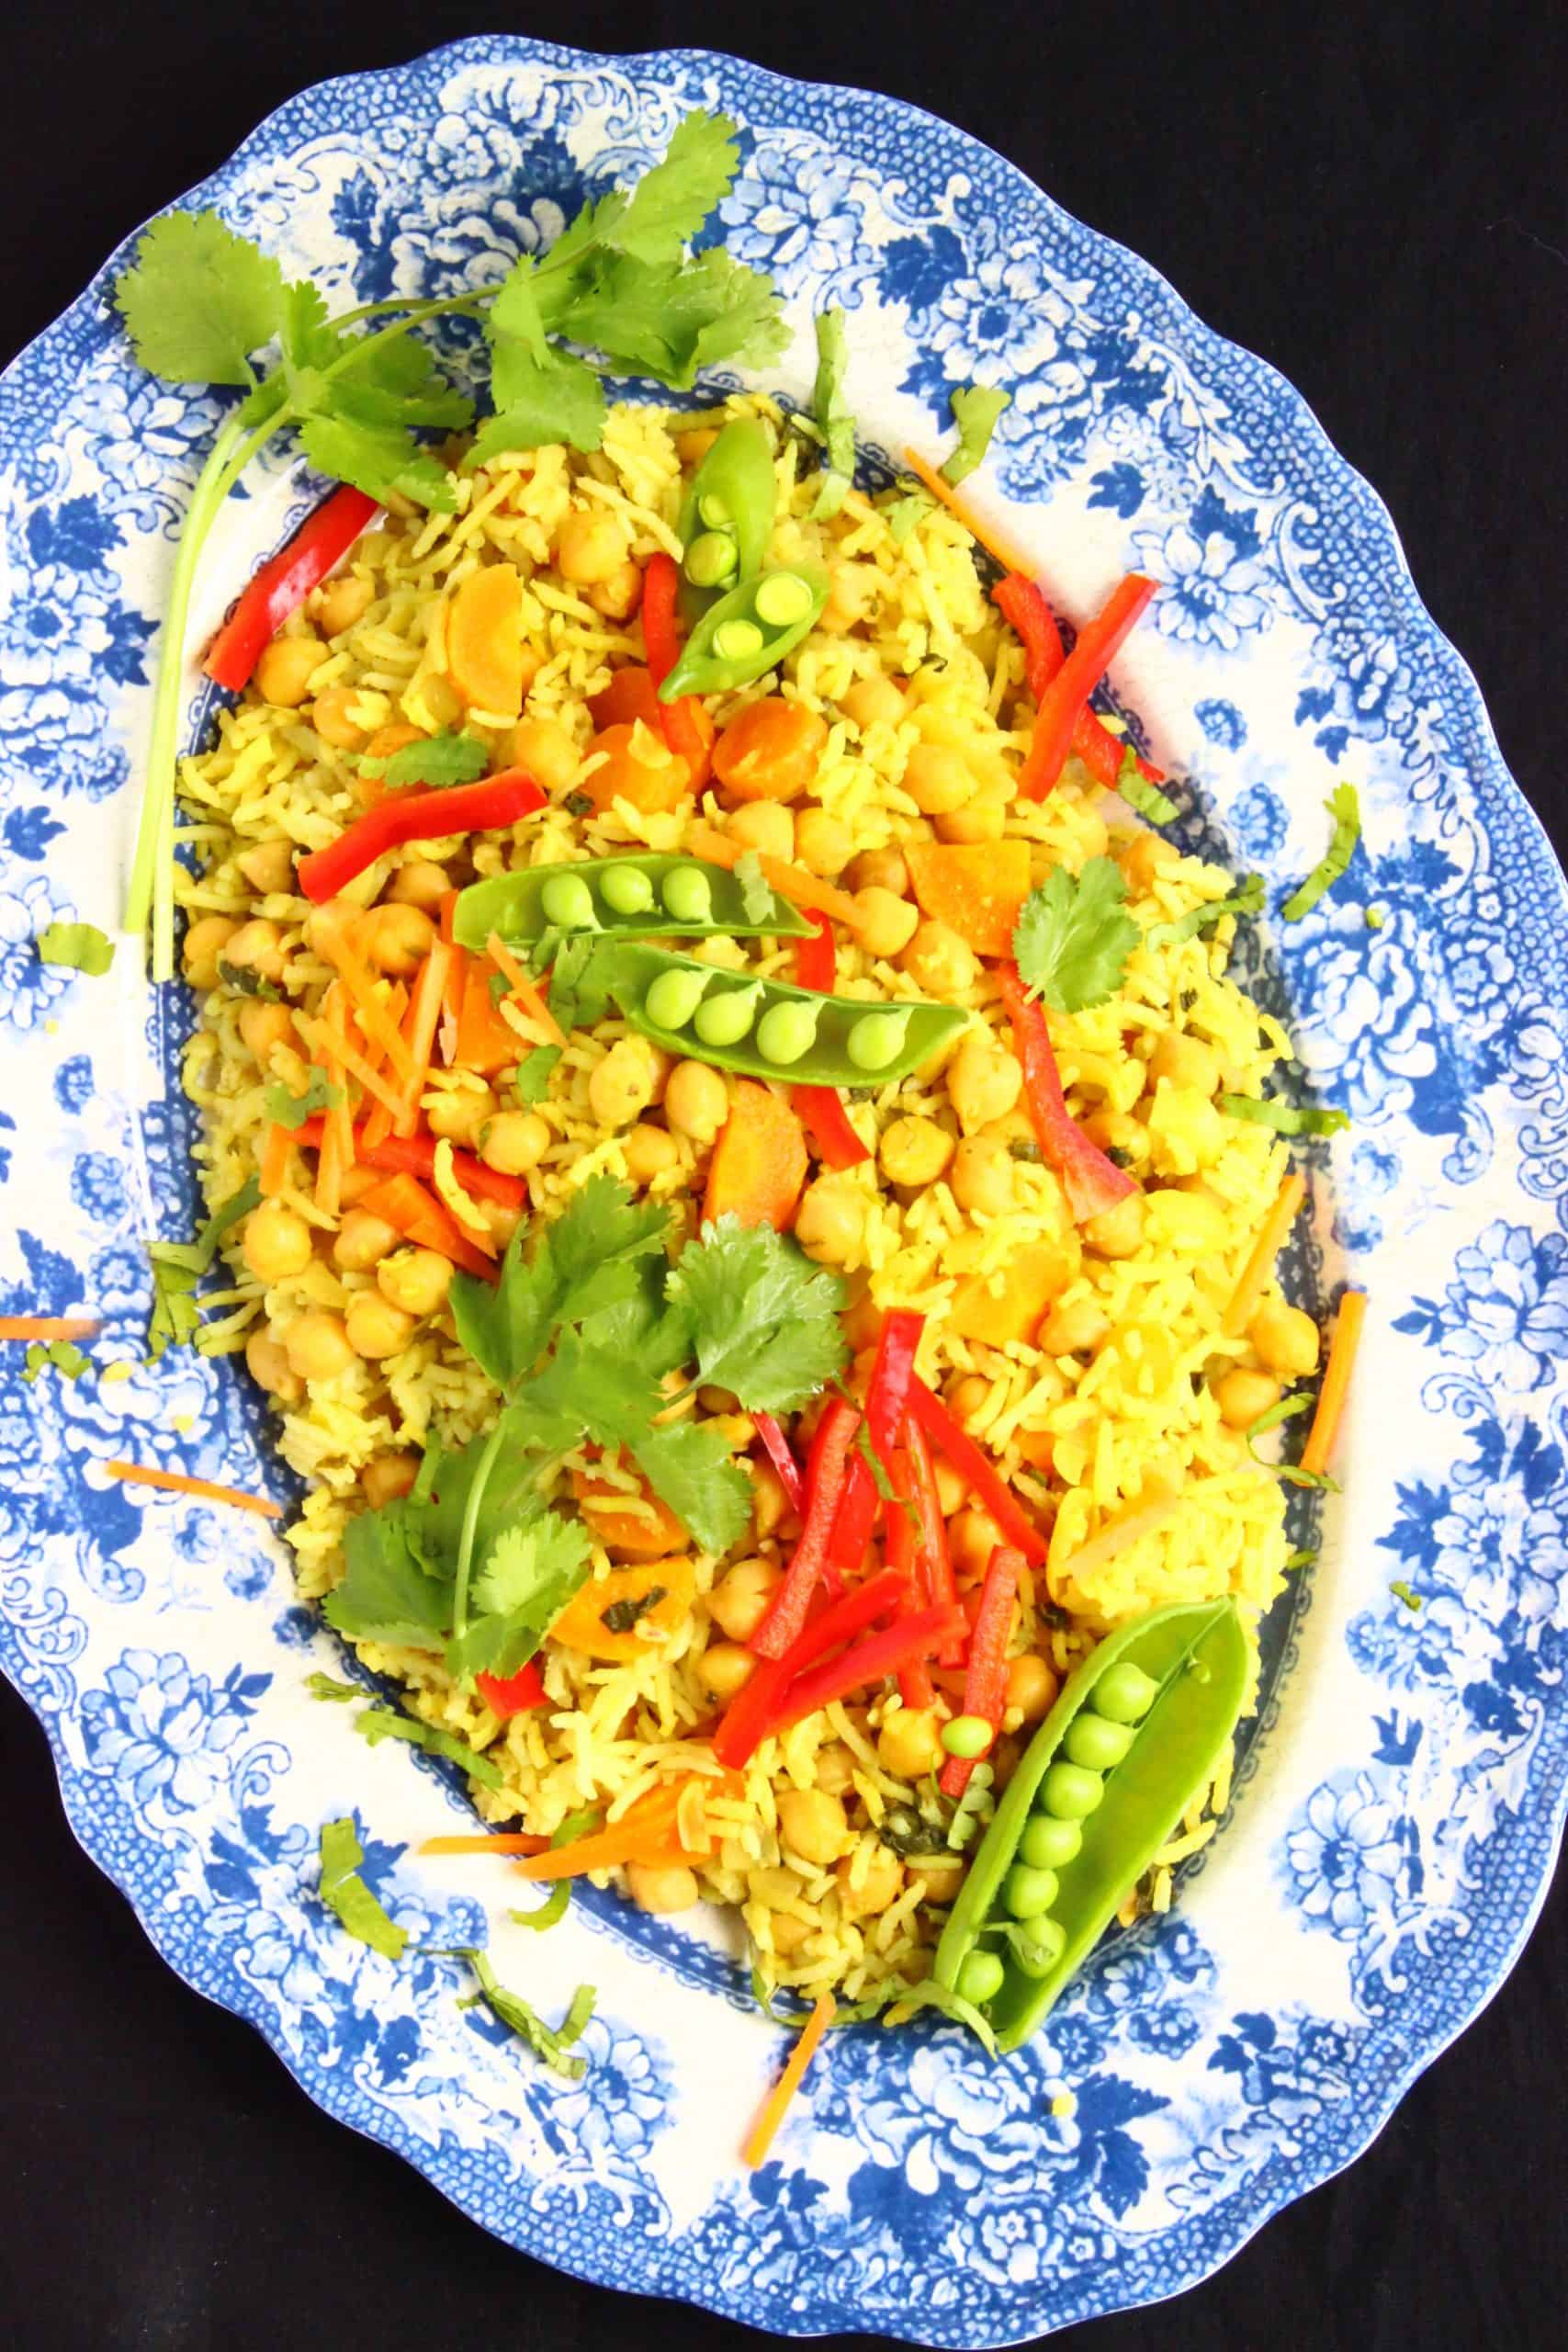 Arroz amarillo con verduras verdes y rojas en una placa estampada azul 